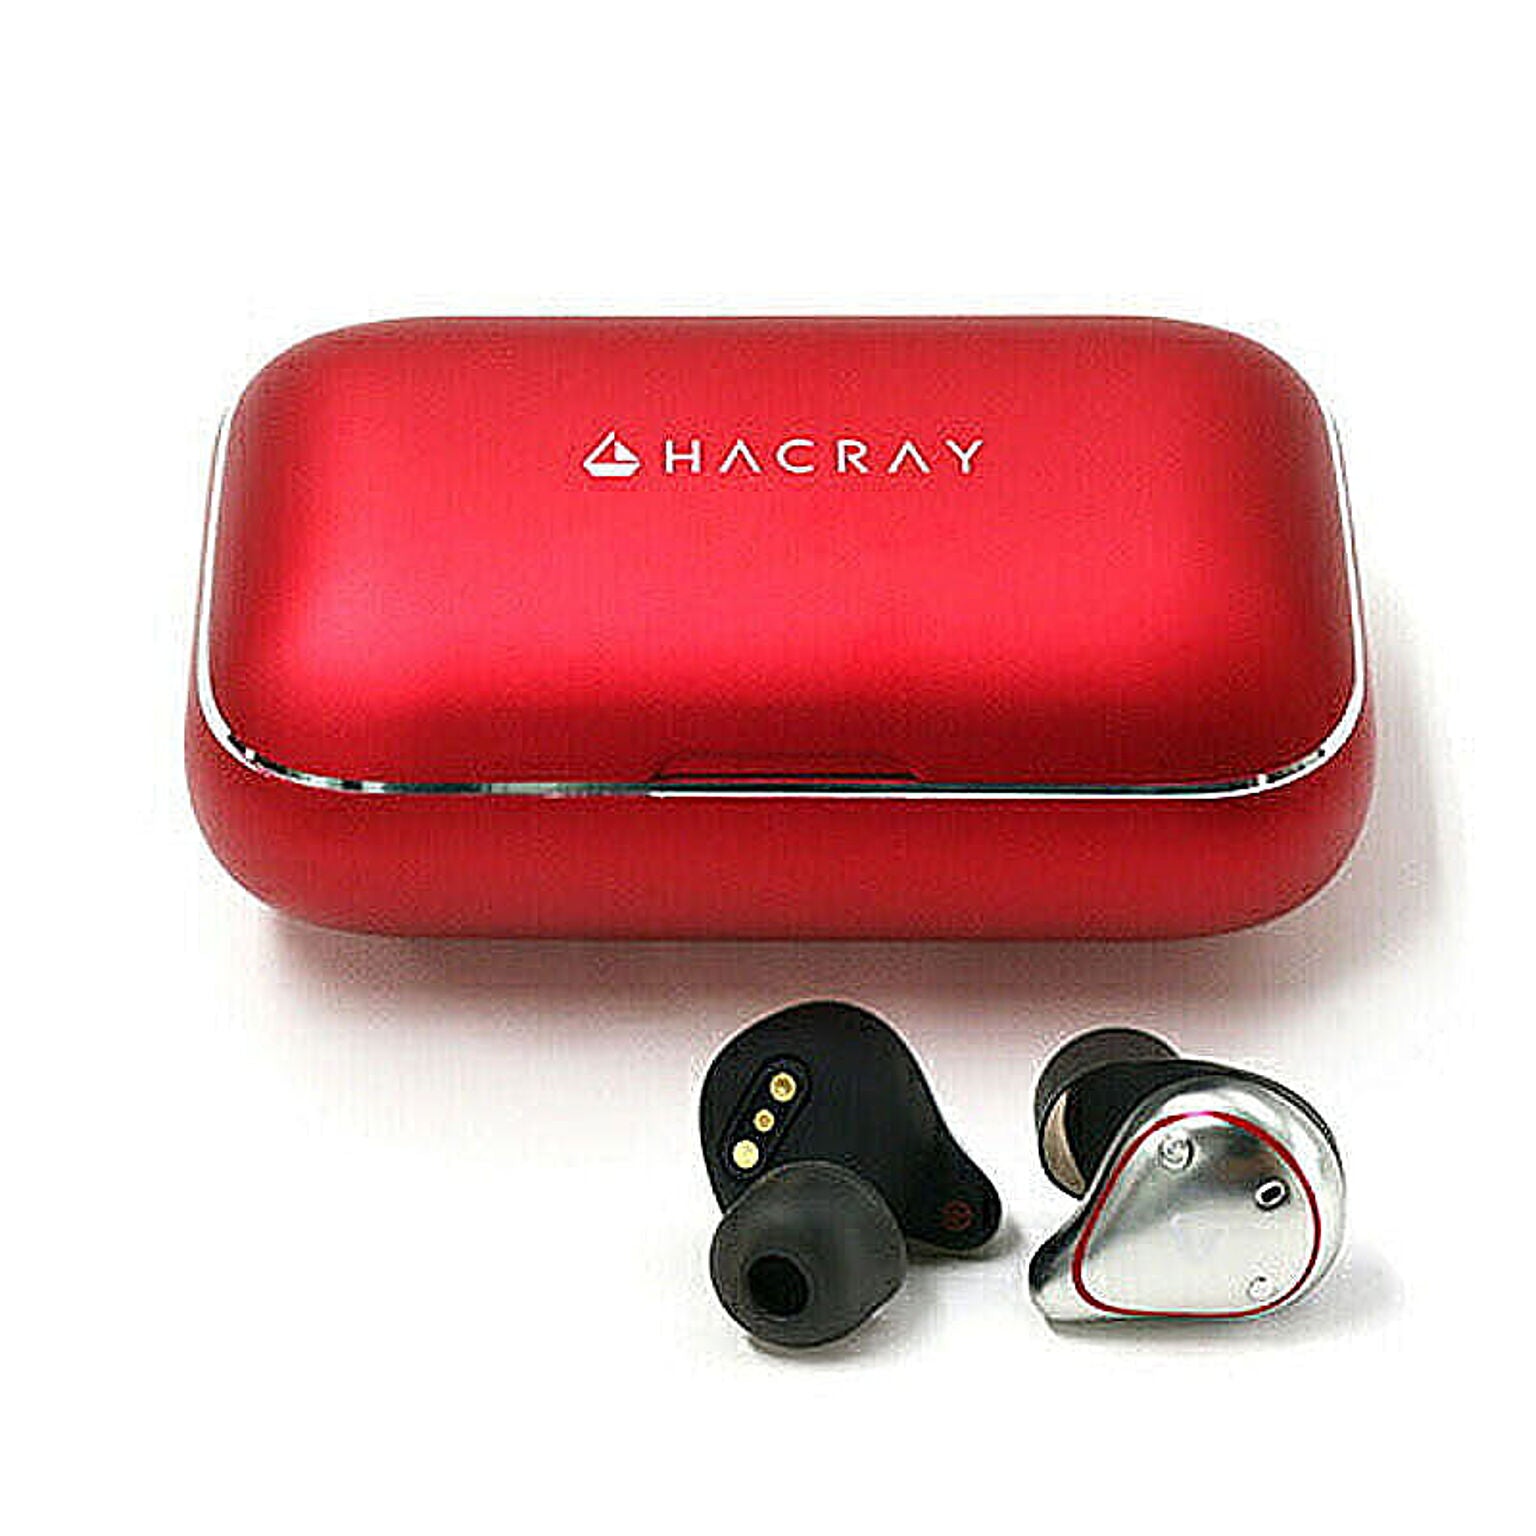 HACRAY　W1 True wireless earphones　Red HR16370 管理No. 4589753053700